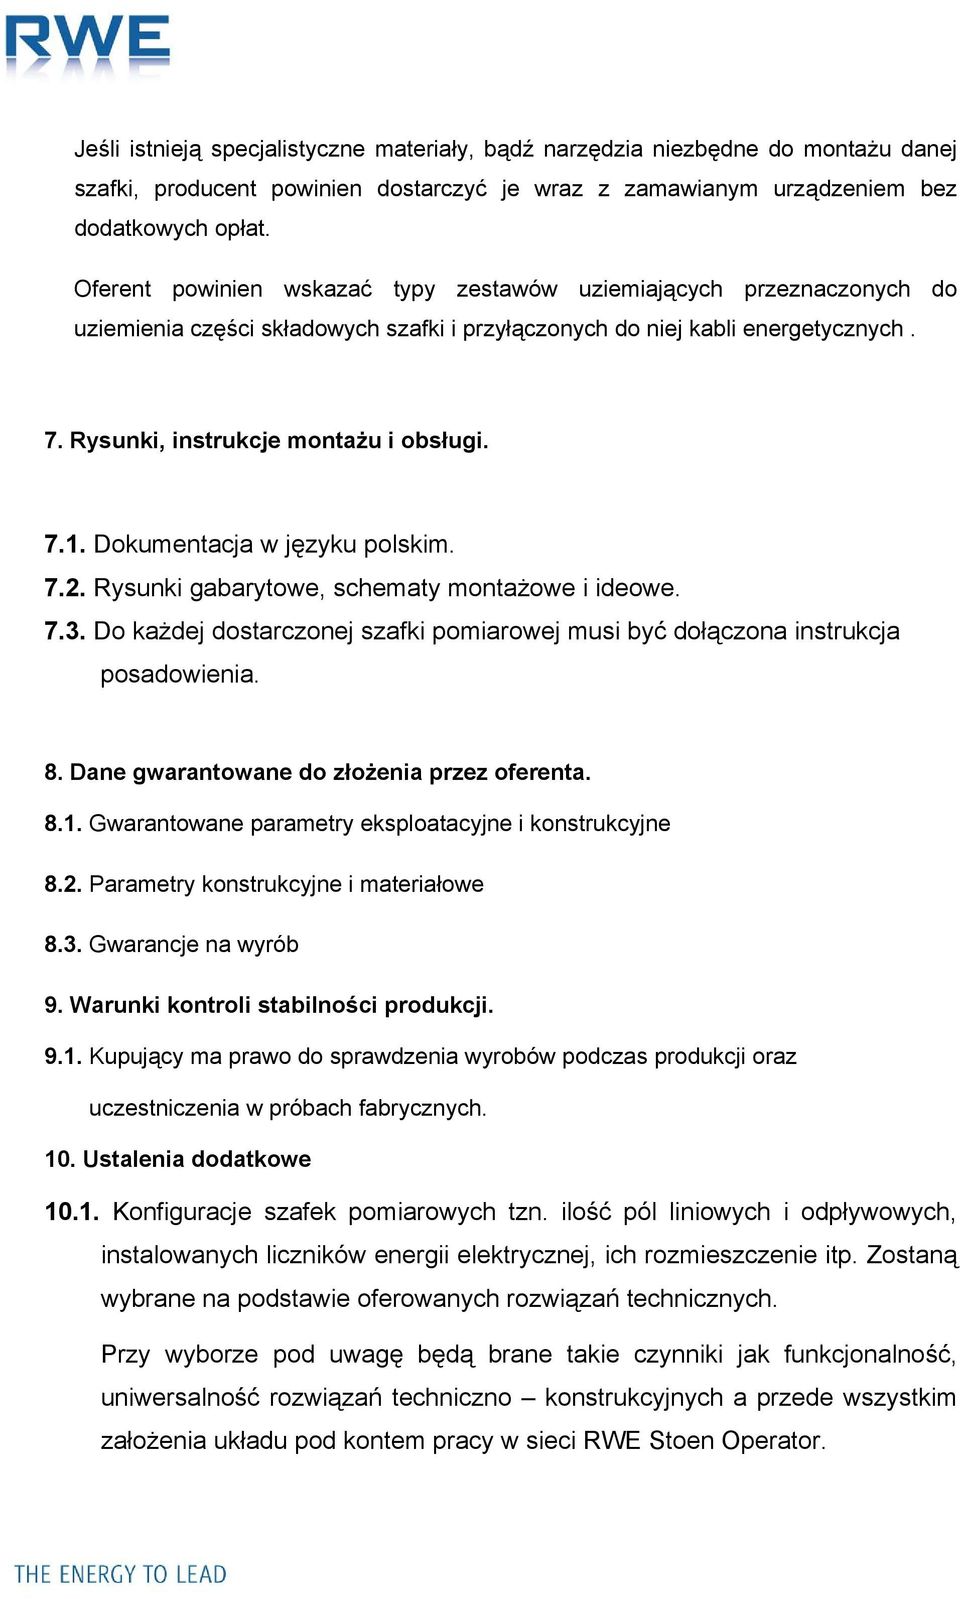 Dokumentacja w języku polskim. 7.2. Rysunki gabarytowe, schematy montażowe i ideowe. 7.3. Do każdej dostarczonej szafki pomiarowej musi być dołączona instrukcja posadowienia. 8.